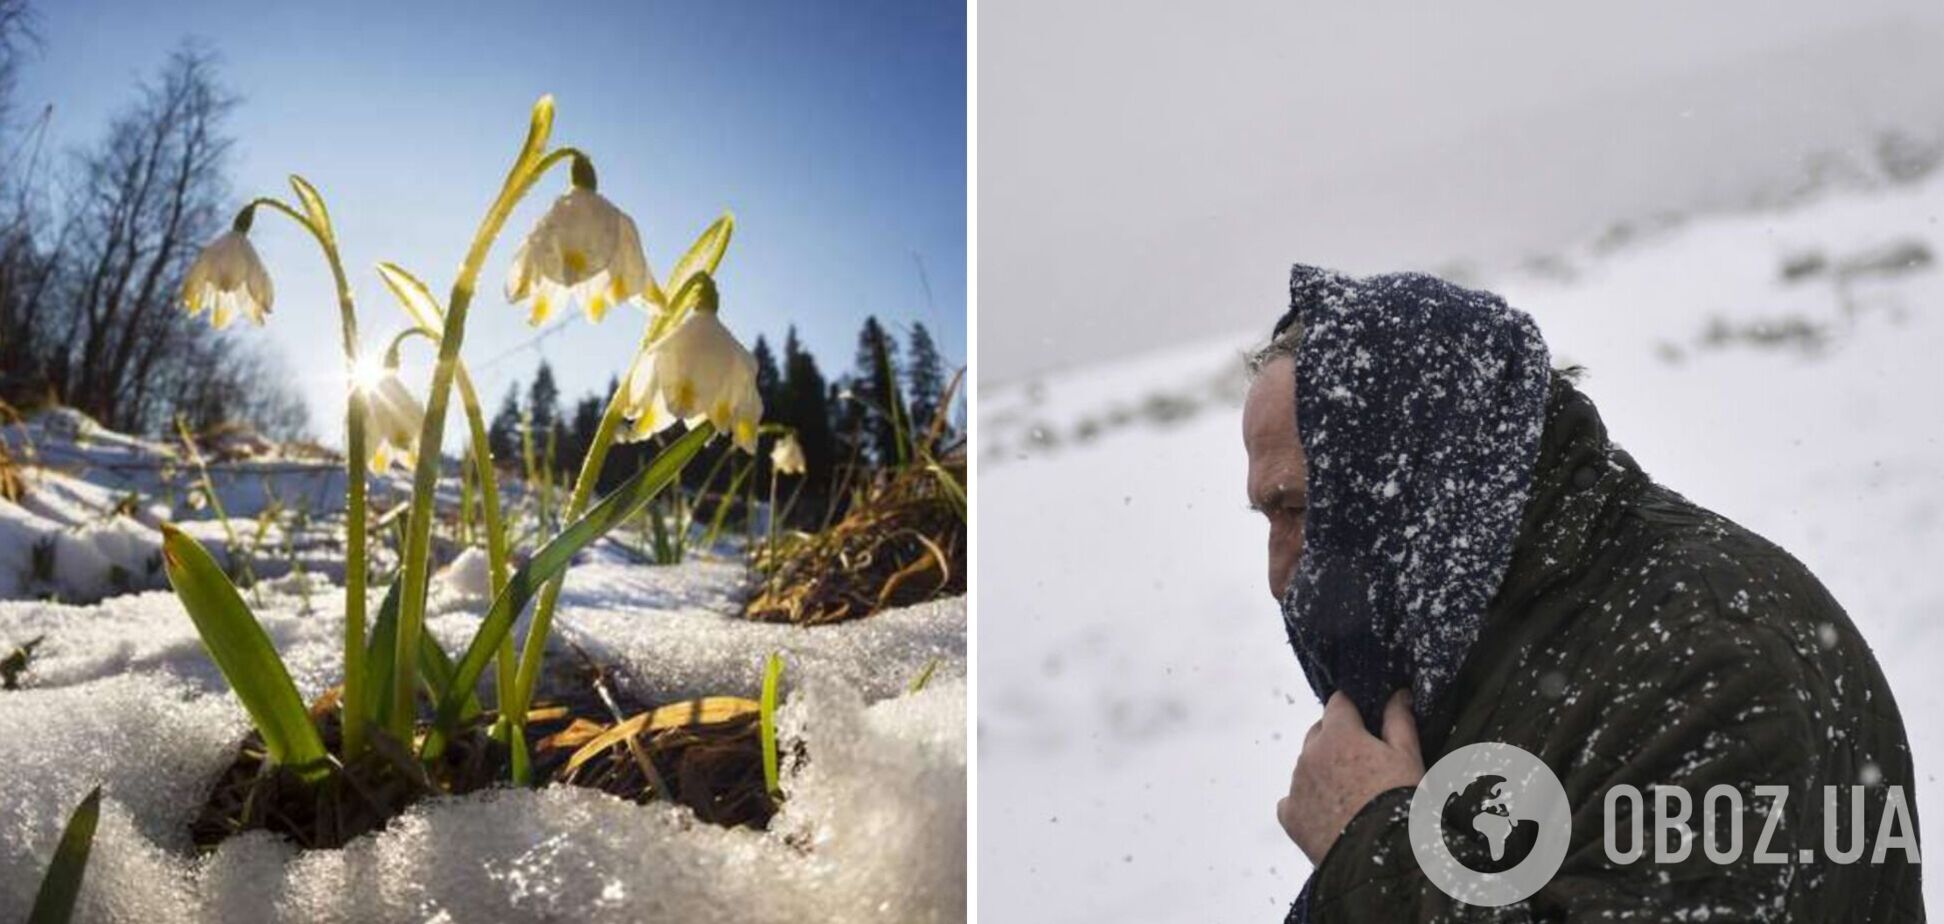 В Украине ударят морозы до минус 12, пойдет снег: синоптик предупредил об изменении погоды и сказал, где будет холоднее всего